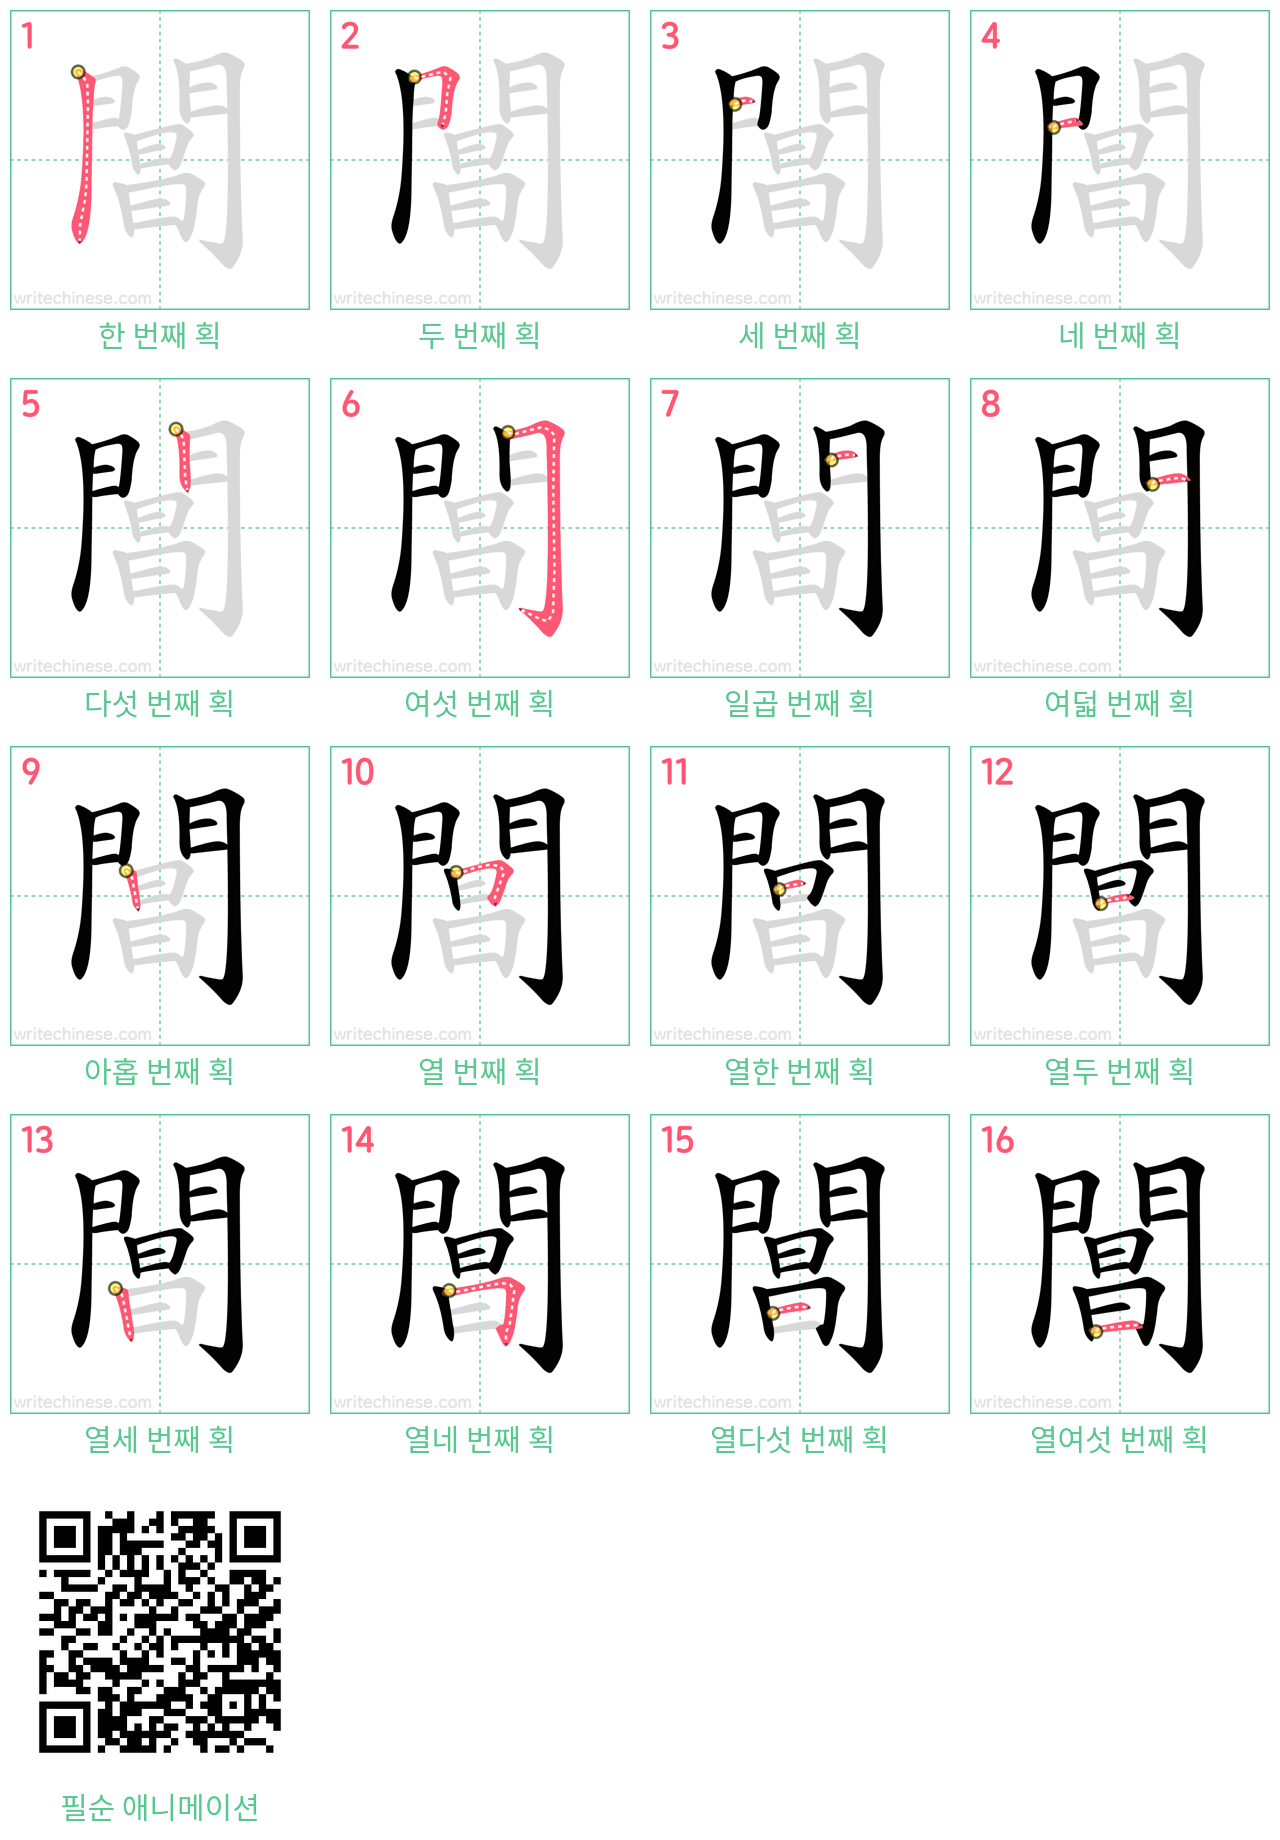 閶 step-by-step stroke order diagrams